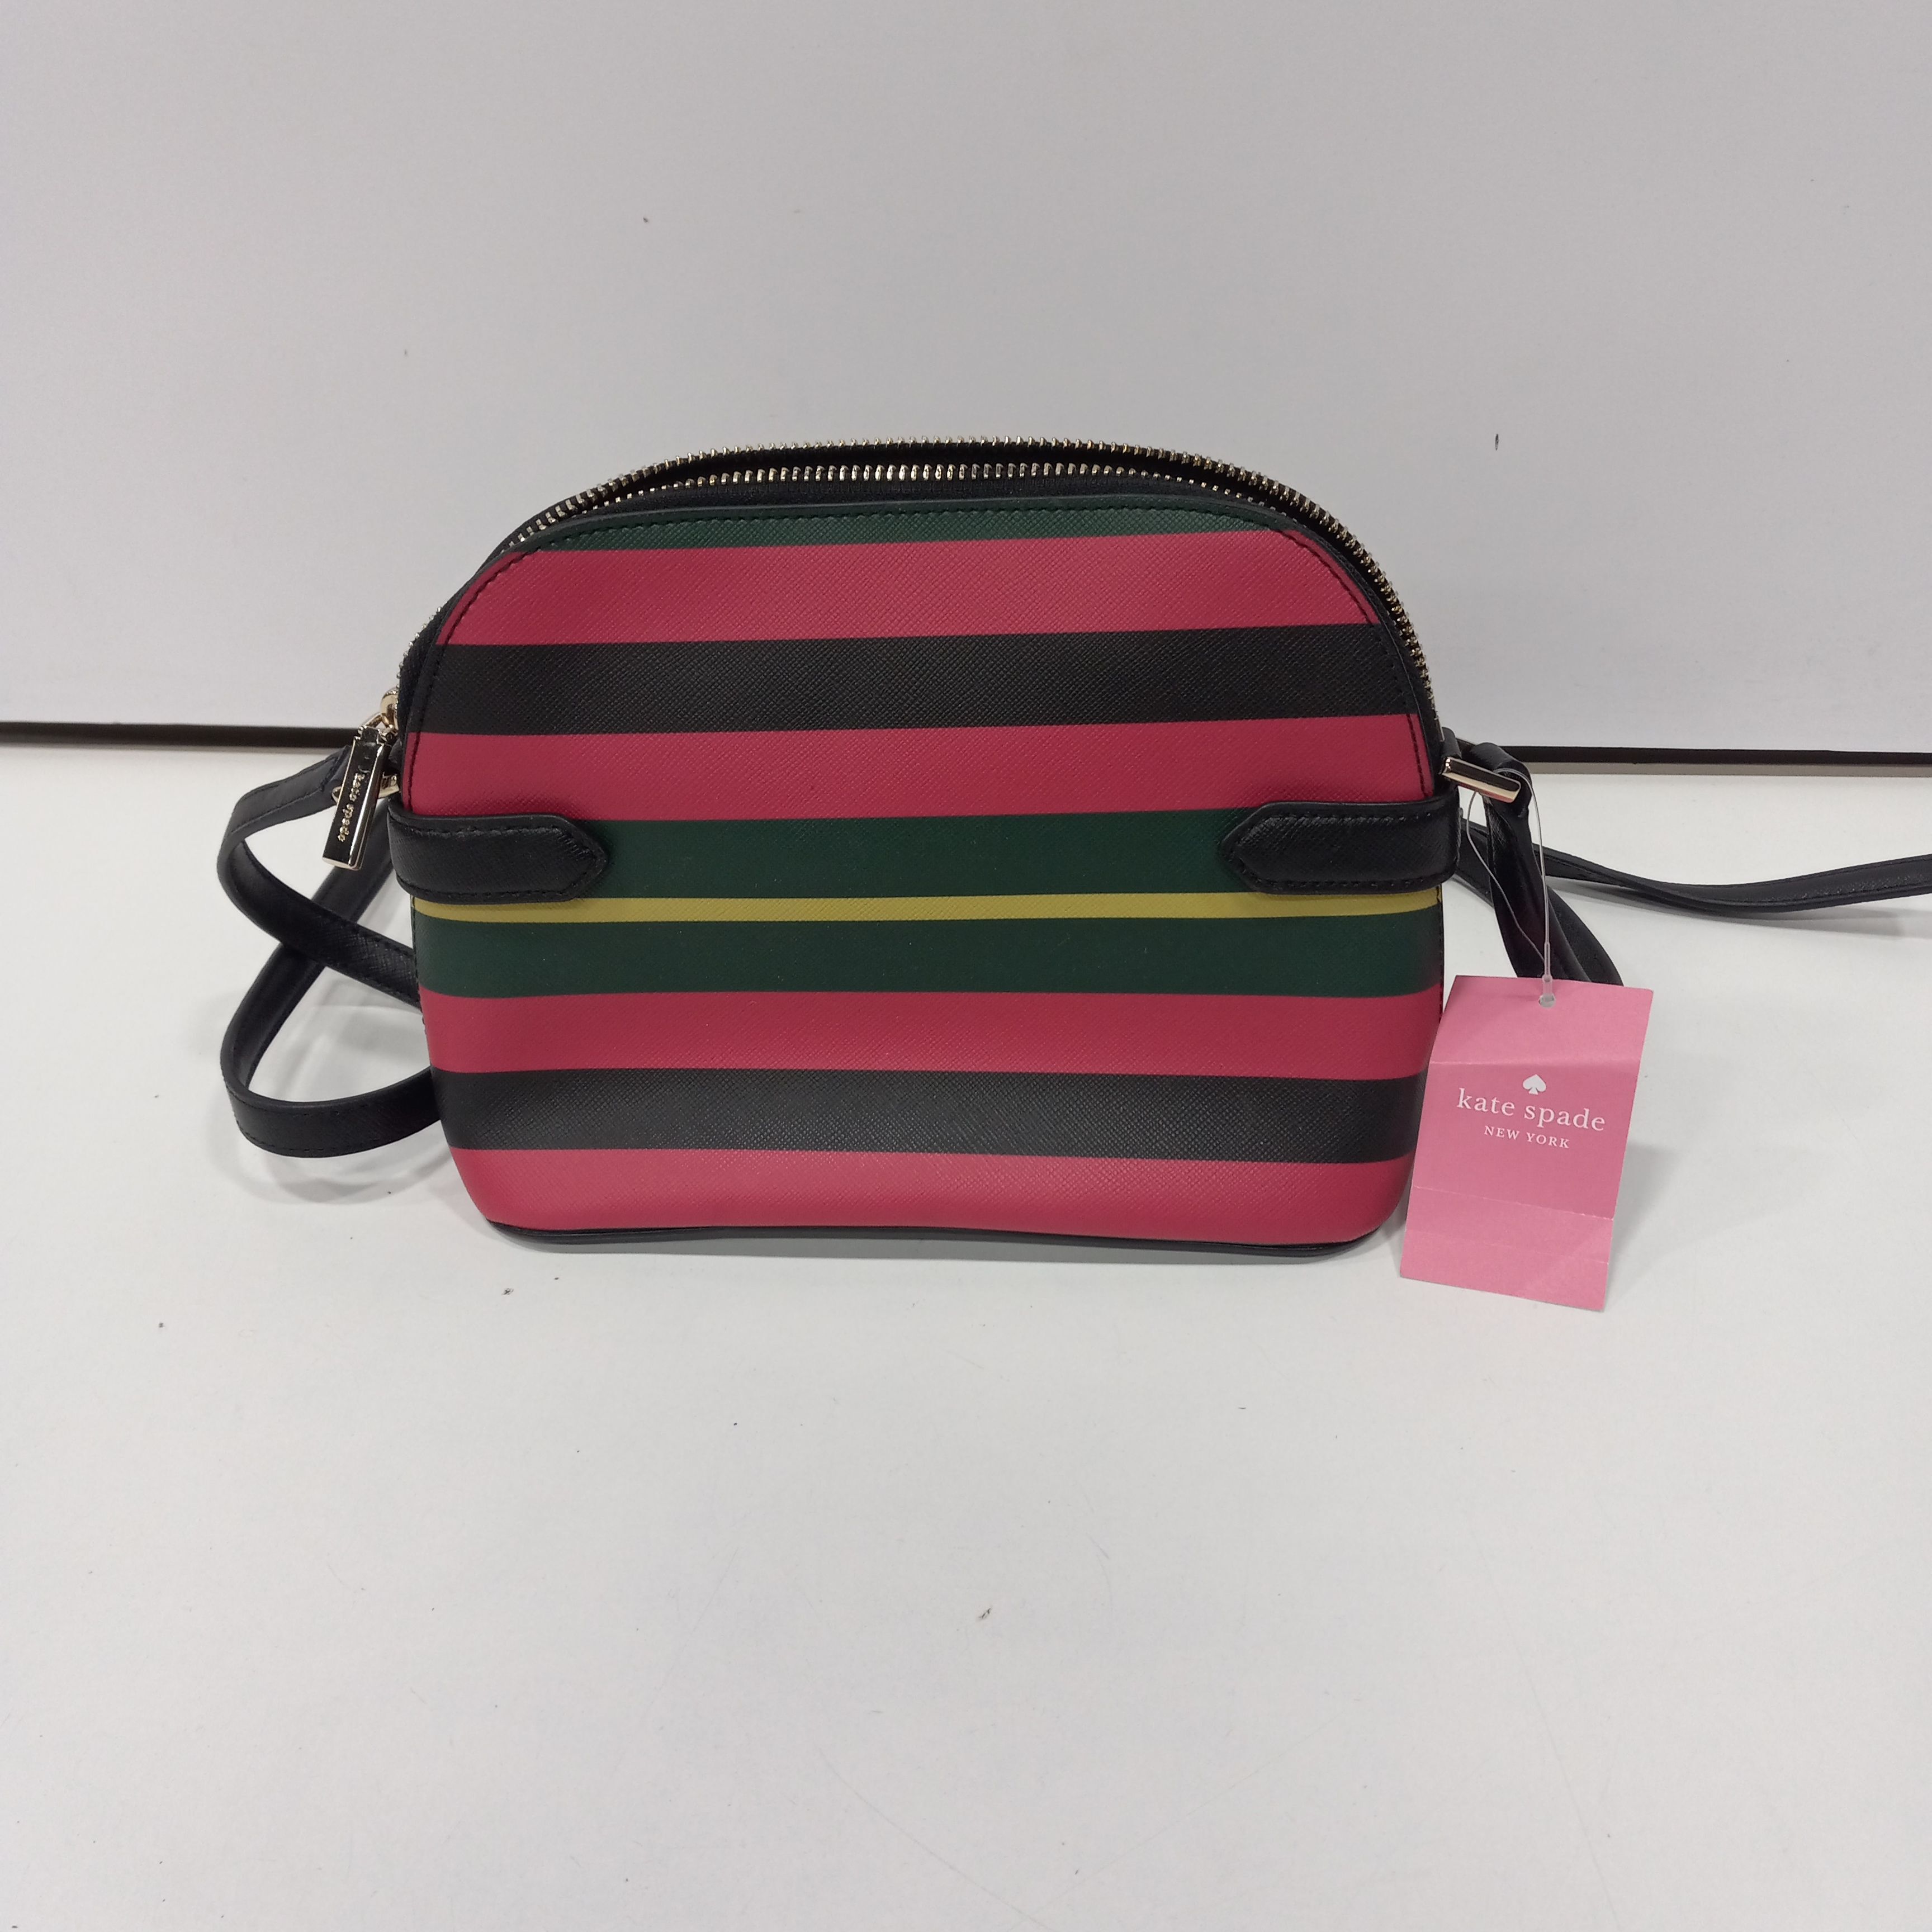 Aldo Aderracia Blue-White Striped Handbag for Women : Amazon.in: Fashion